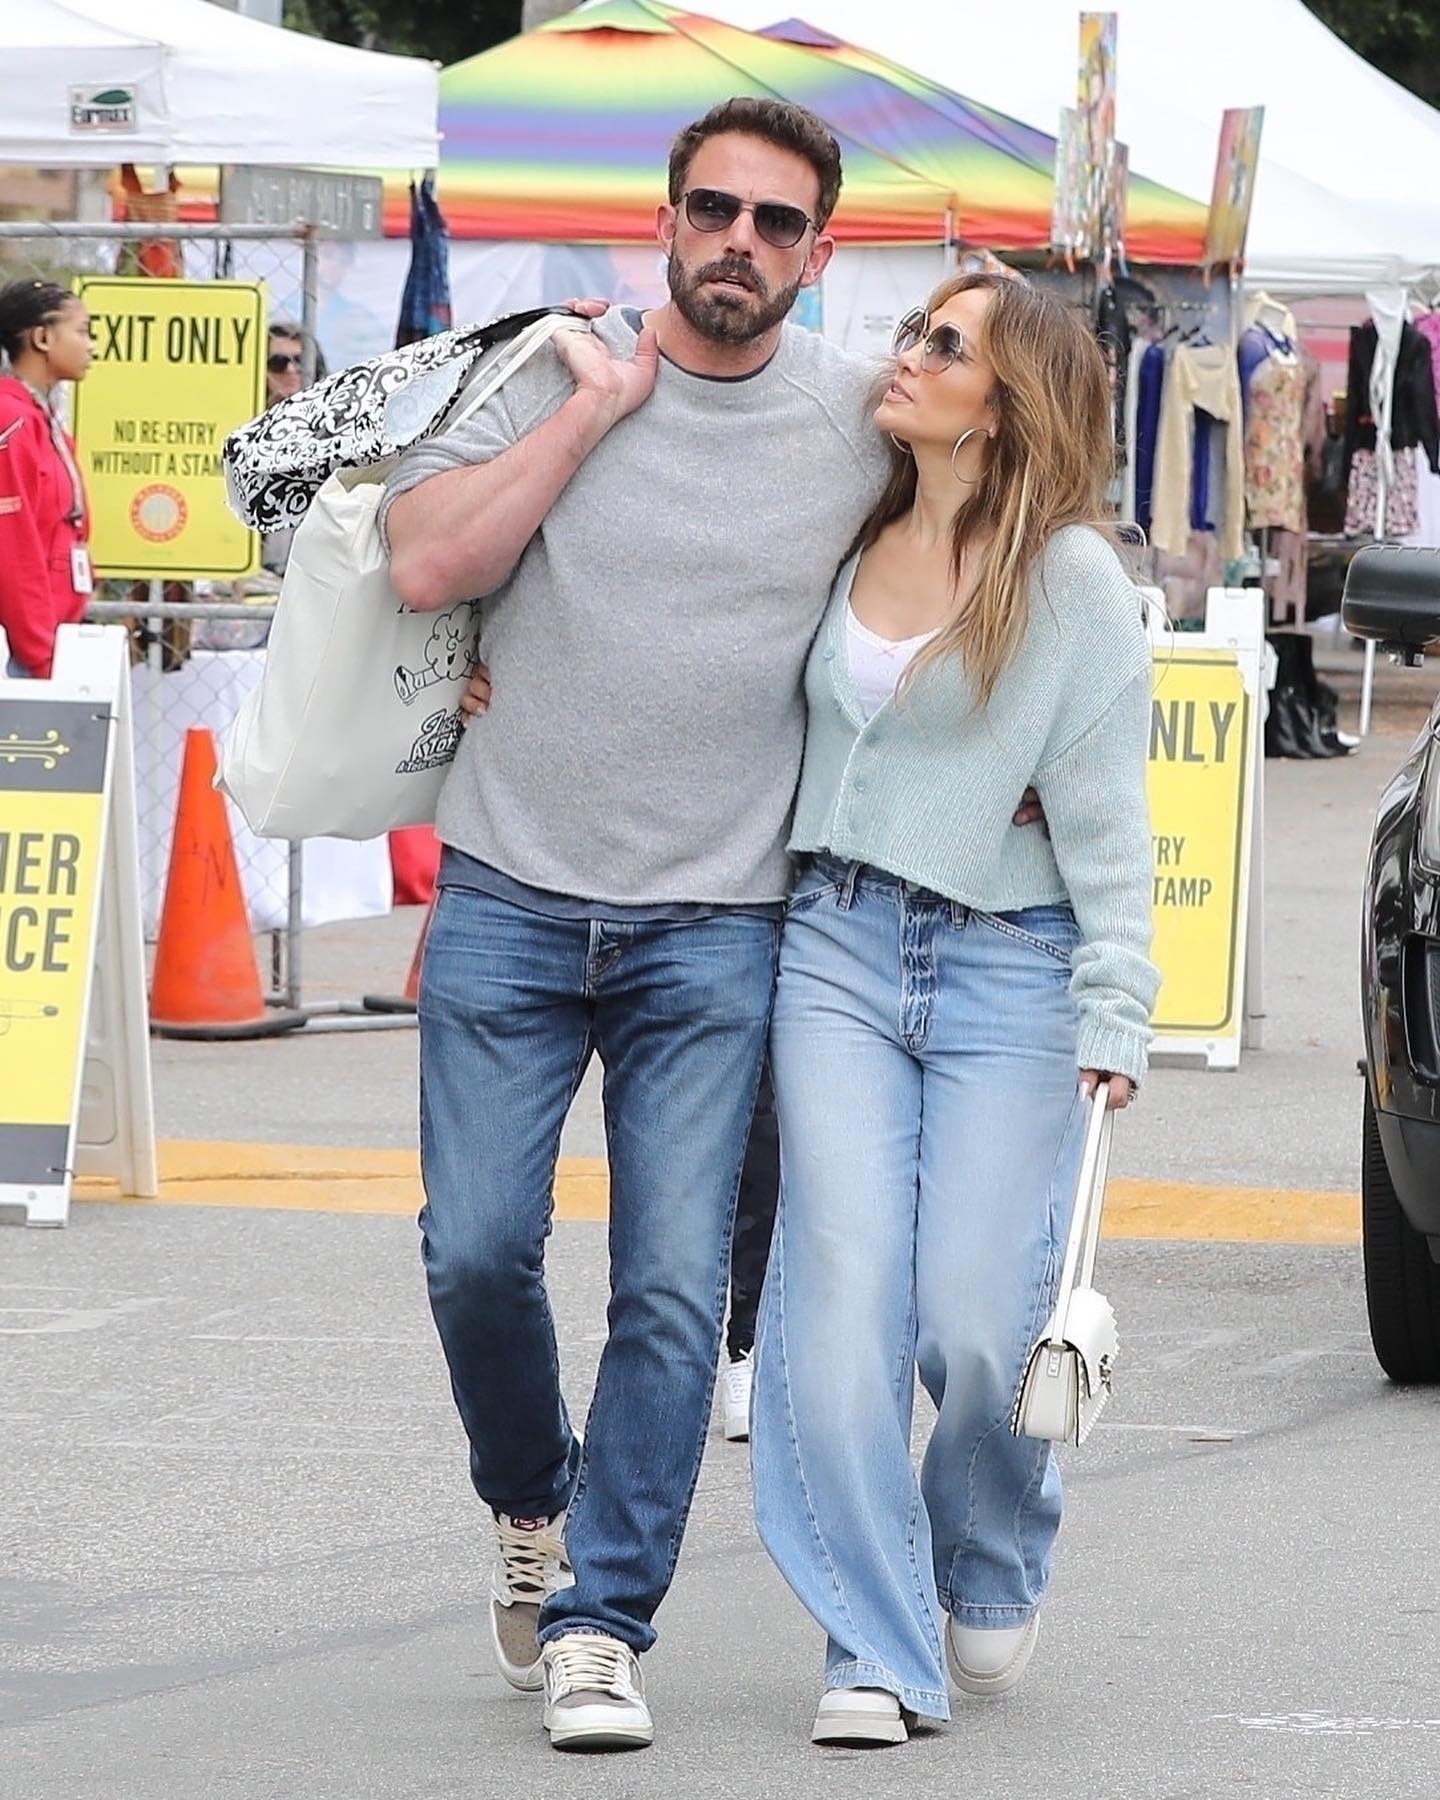 Широкі джинси та вкорочений кардиган: Дженніфер Лопес у трендовому осінньому образі вийшла з чоловіком на шопінг